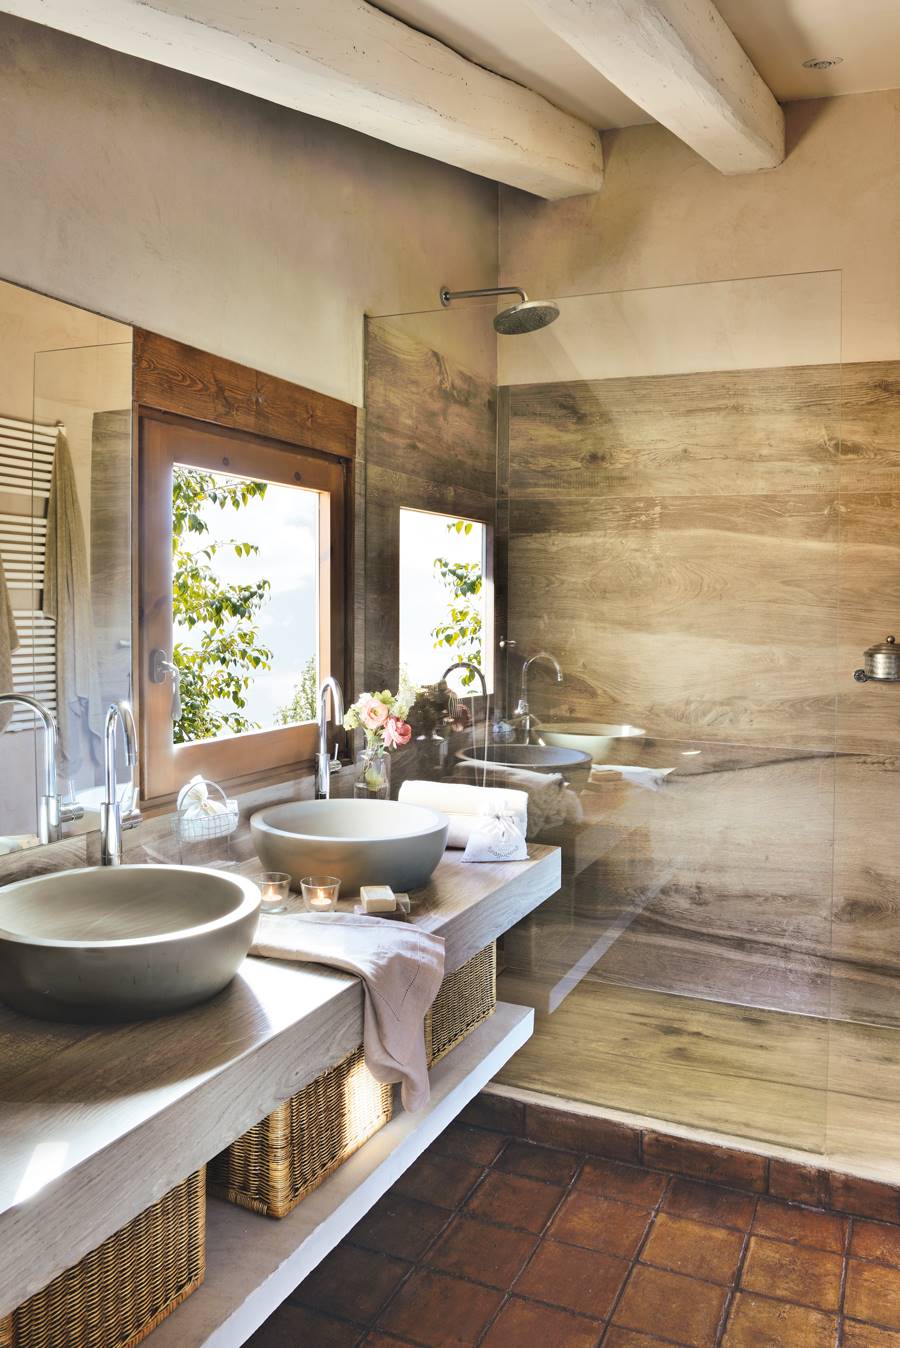 Baño rústico moderno con ducha con revestimiento y pavimento que imita la madera 00411694